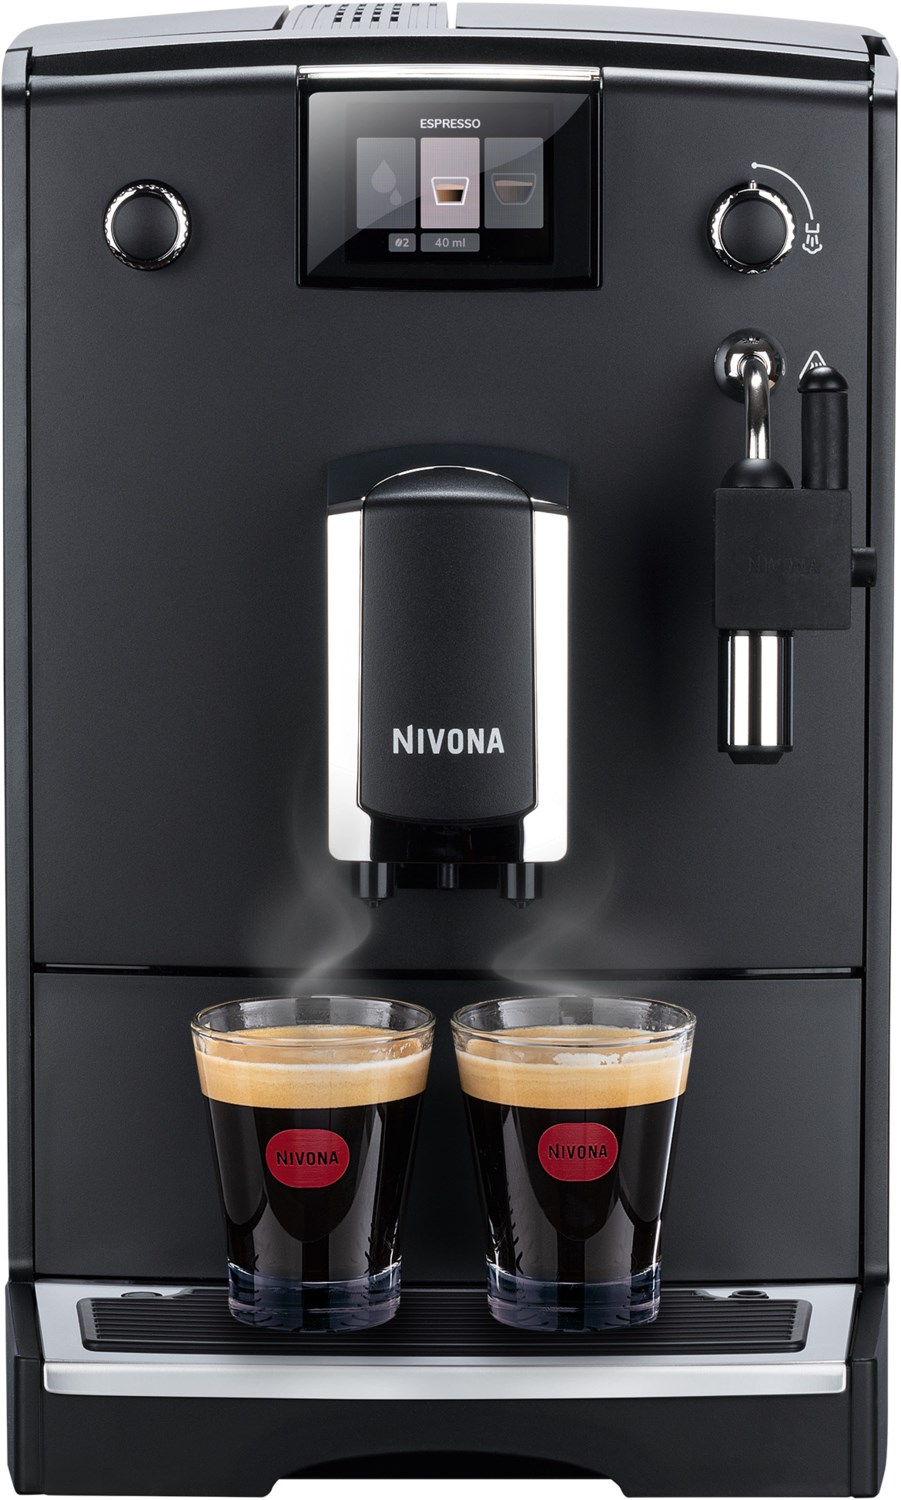 CafeRomatica NICR 550 Kaffee-Vollautomat matt schwarz/chrom von Nivona